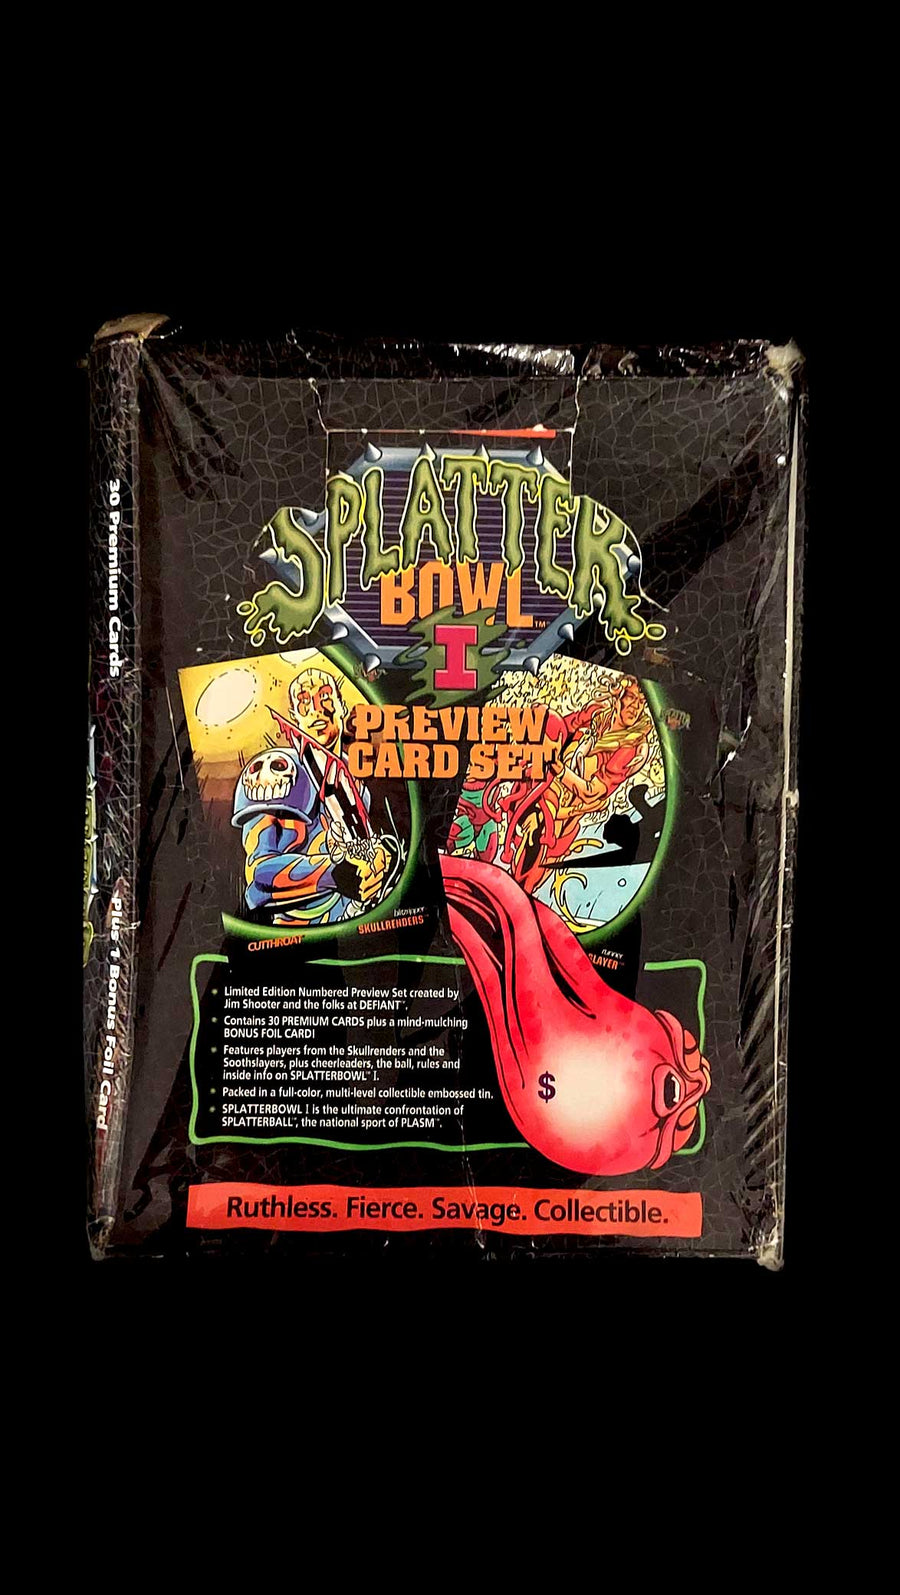 Splatter-Bowl-I-Preview-Card-Set-Limited-Edition